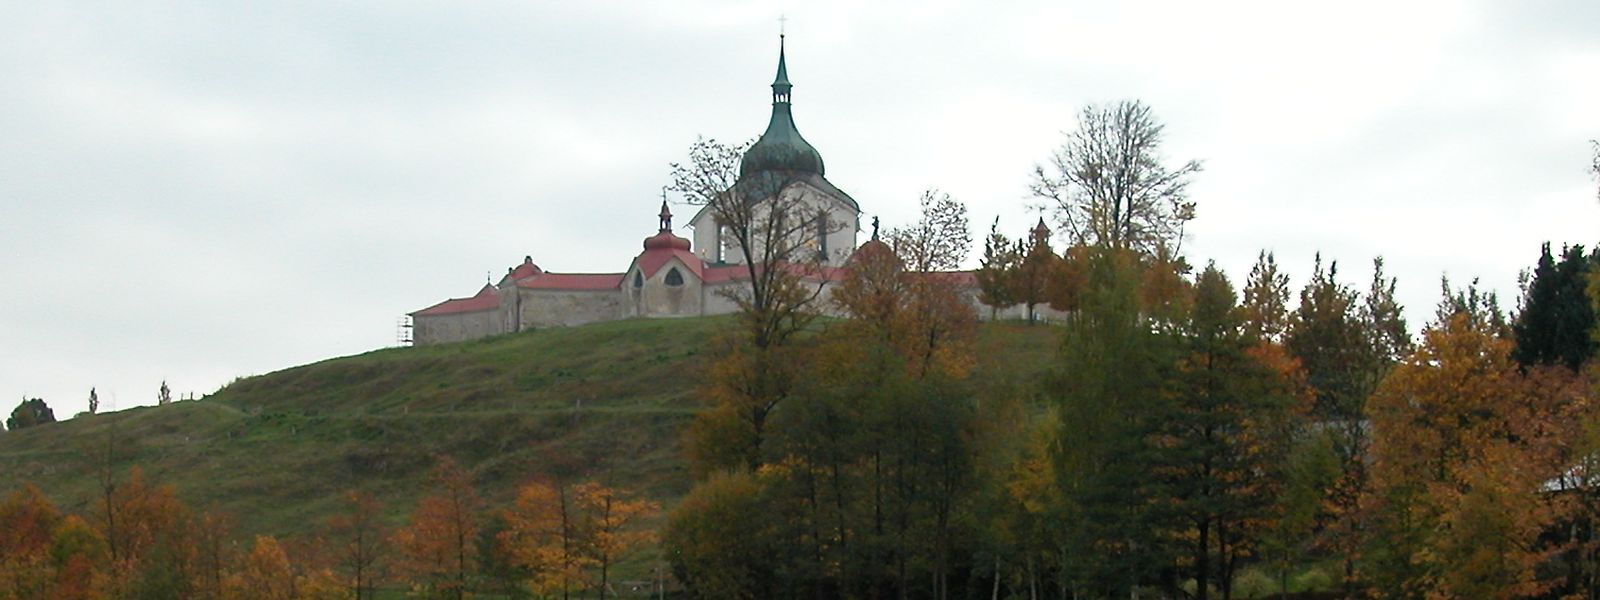 Blick auf den Grünen Berg zur Wallfahrtskirche des Heiligen Johannes von Nepomuk in Žďár nad Sázavou.